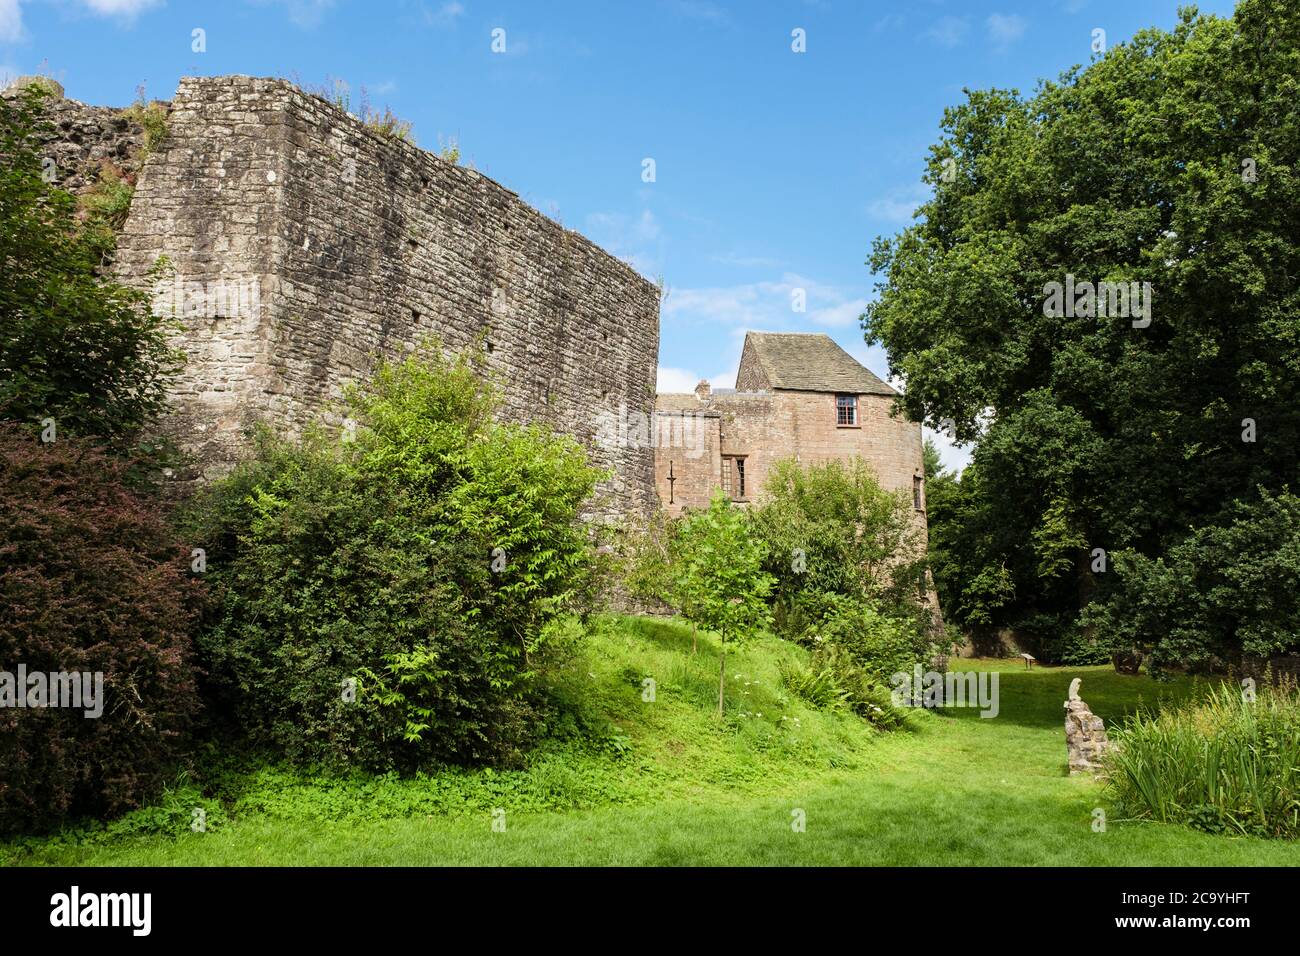 Siglo 12 Norman murallas del Castillo y jardín de fosos. Ahora un albergue juvenil. St Briavel's, Forest of Dean district, Gloucestershire, Inglaterra, Reino Unido, Gran Bretaña Foto de stock